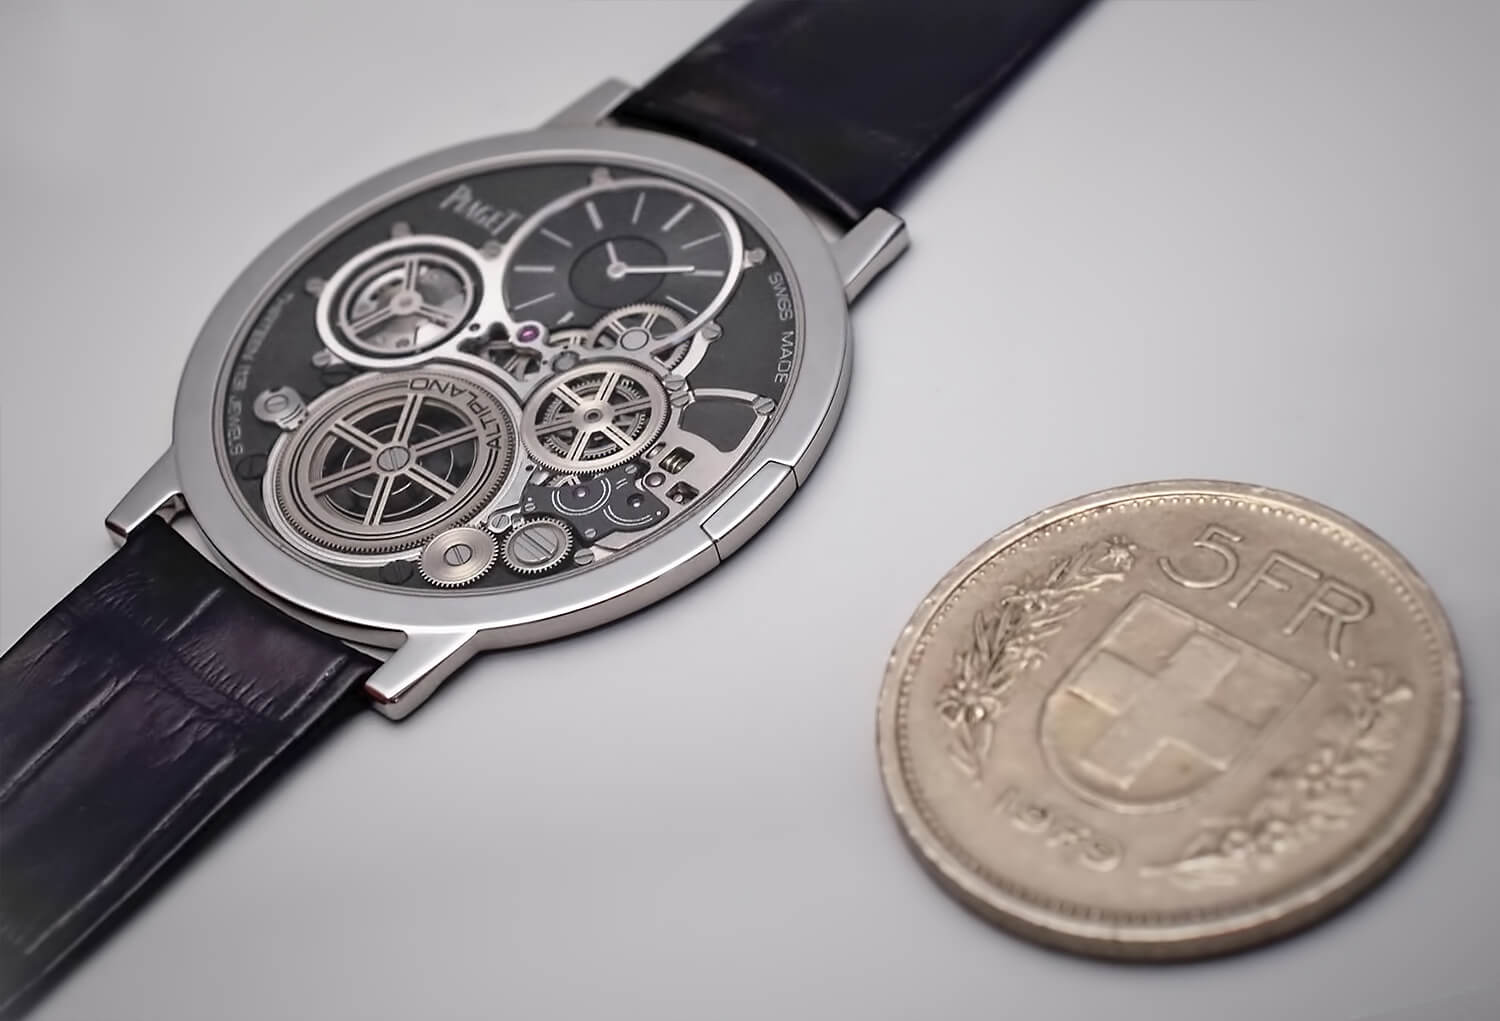 Наручные часы Piaget Altiplano 900P с толщиной корпуса 3,65 мм